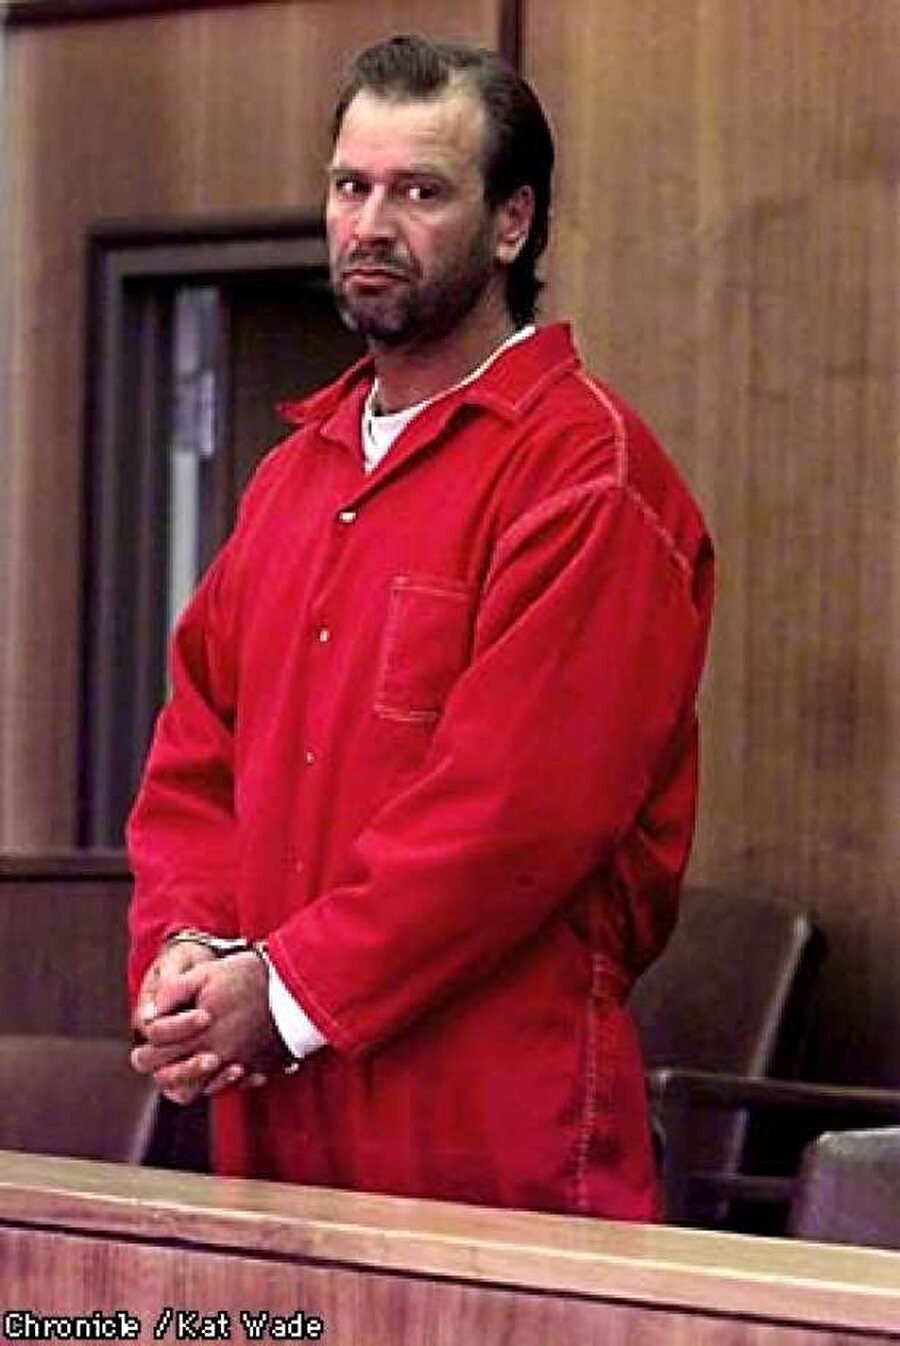 Wayne Adam Ford
Cinayet işlediği tarih aralığı: 1997-1998
Cinayet sayısı: 4

 Tecavüz ettiği dört kişiyi yine aynı vahşi duygularla katletti. 
